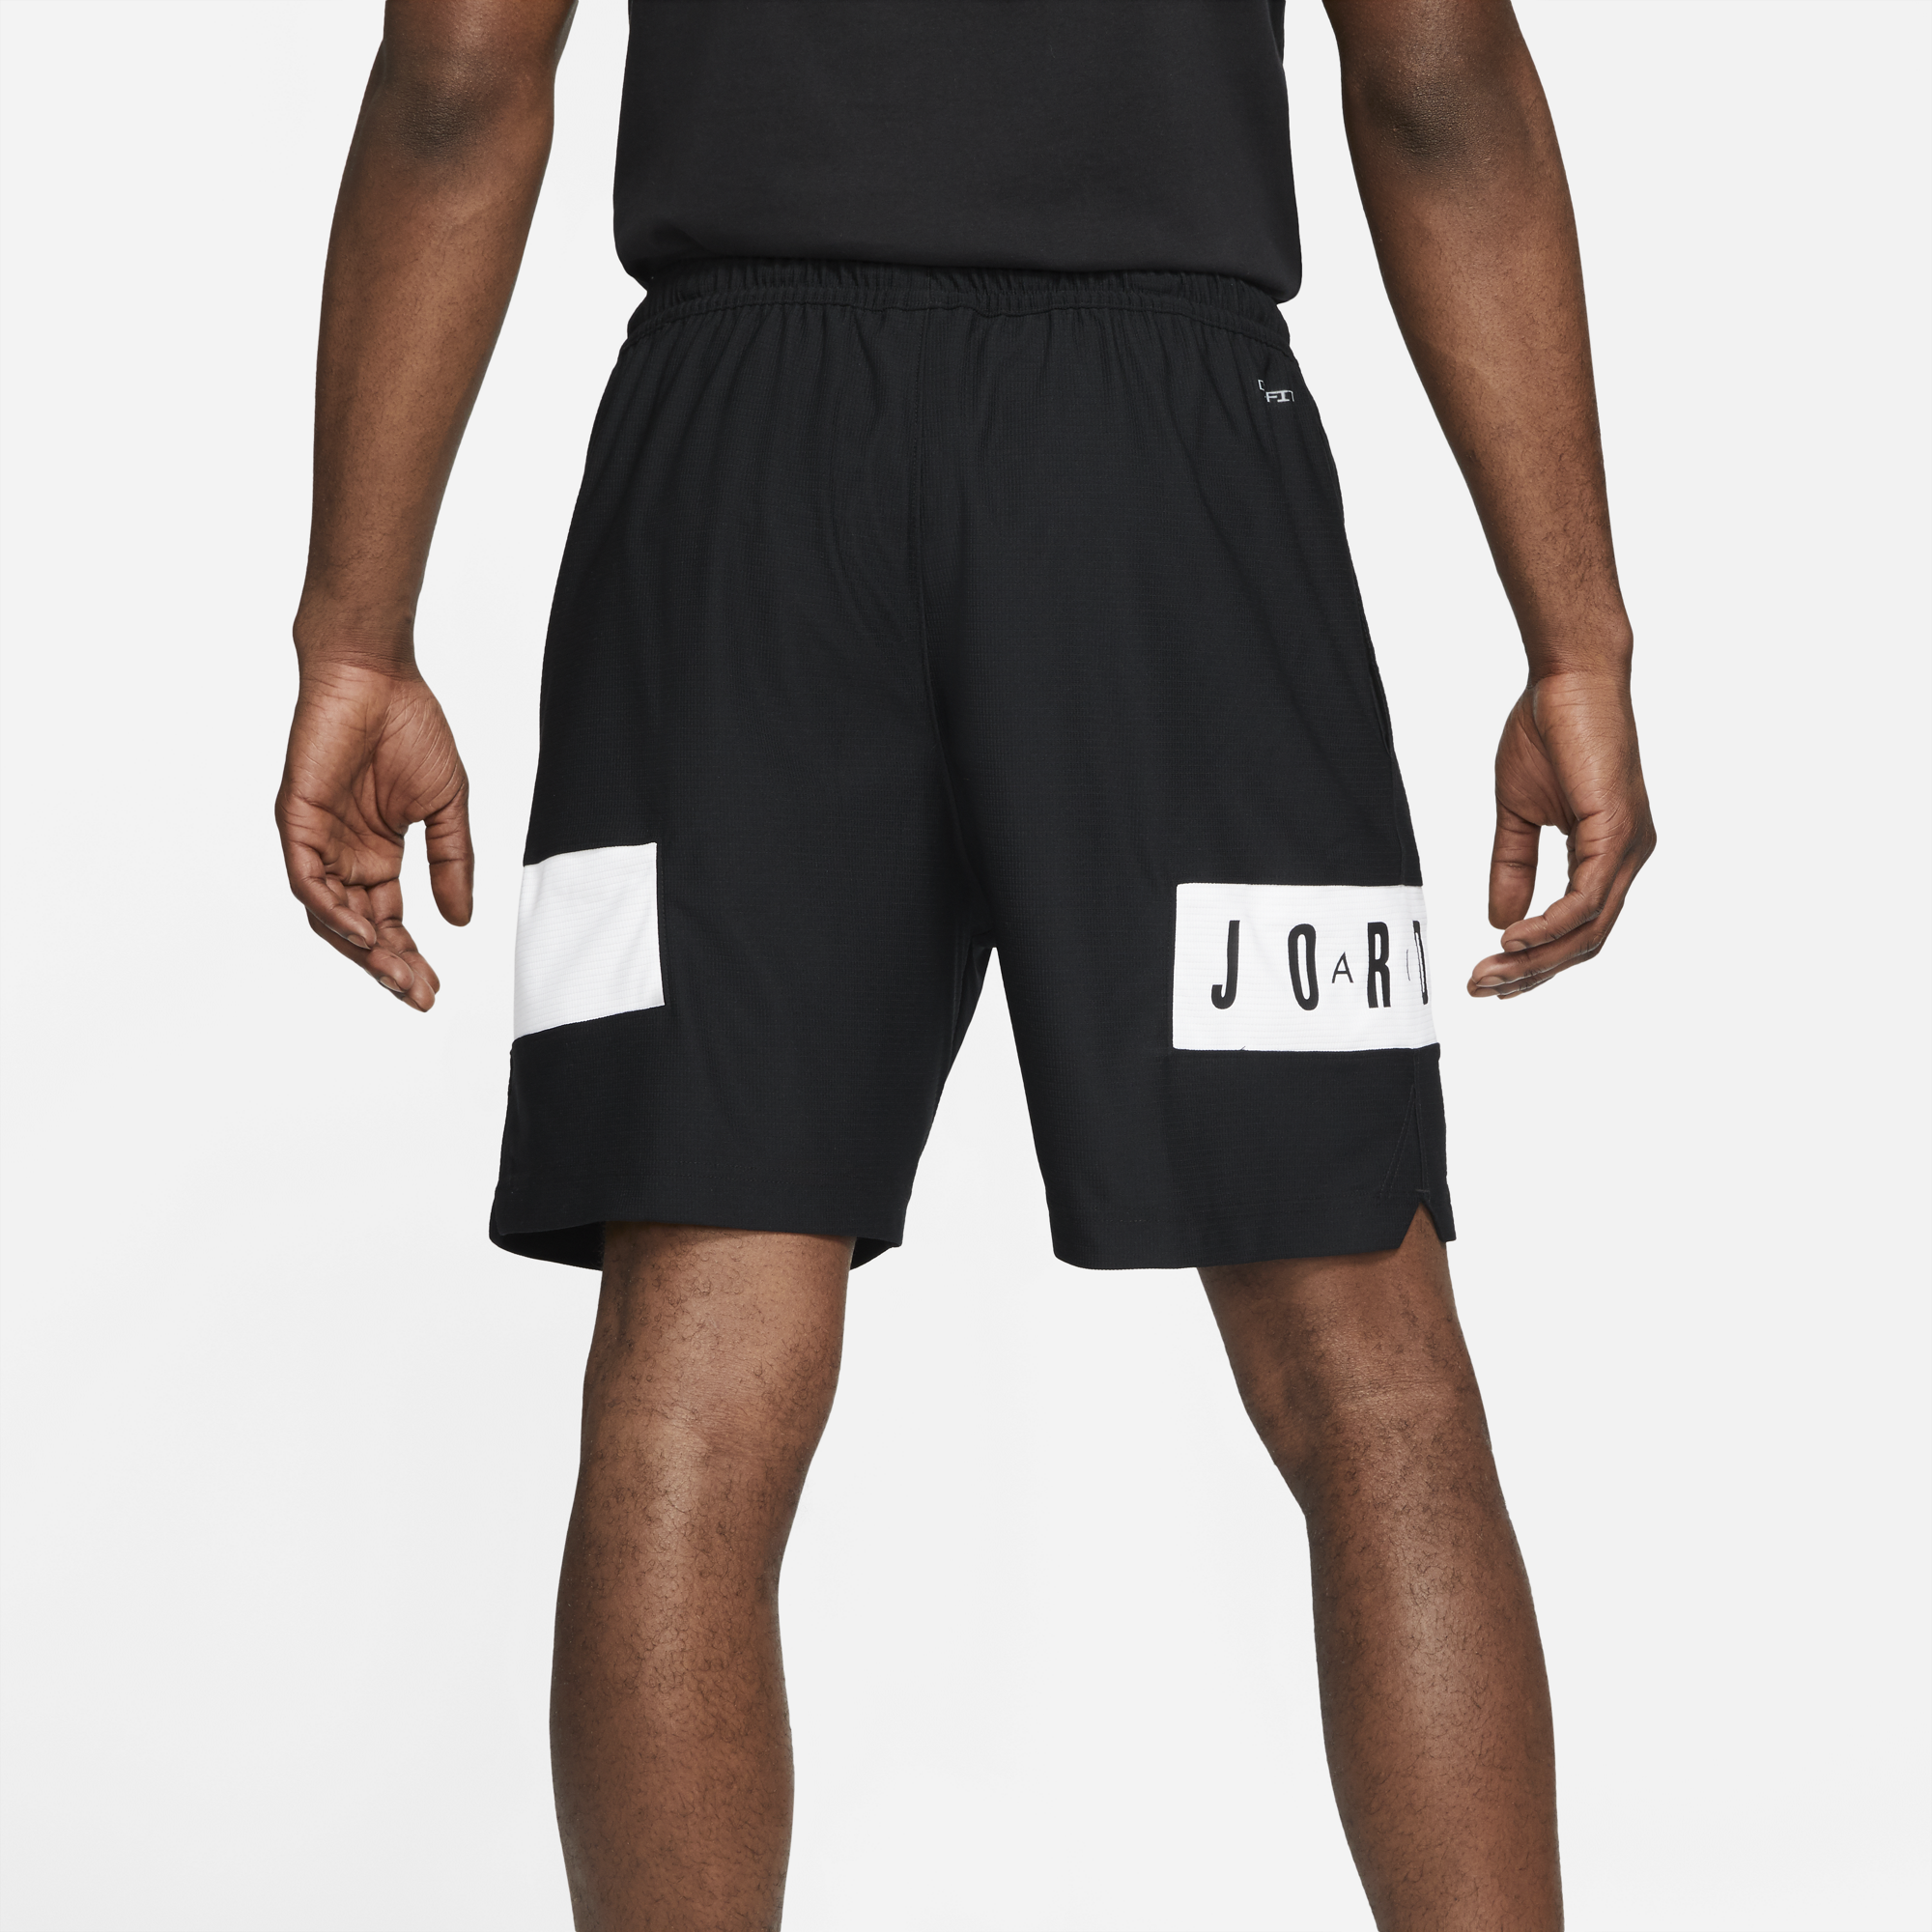 jordan 11 shorts